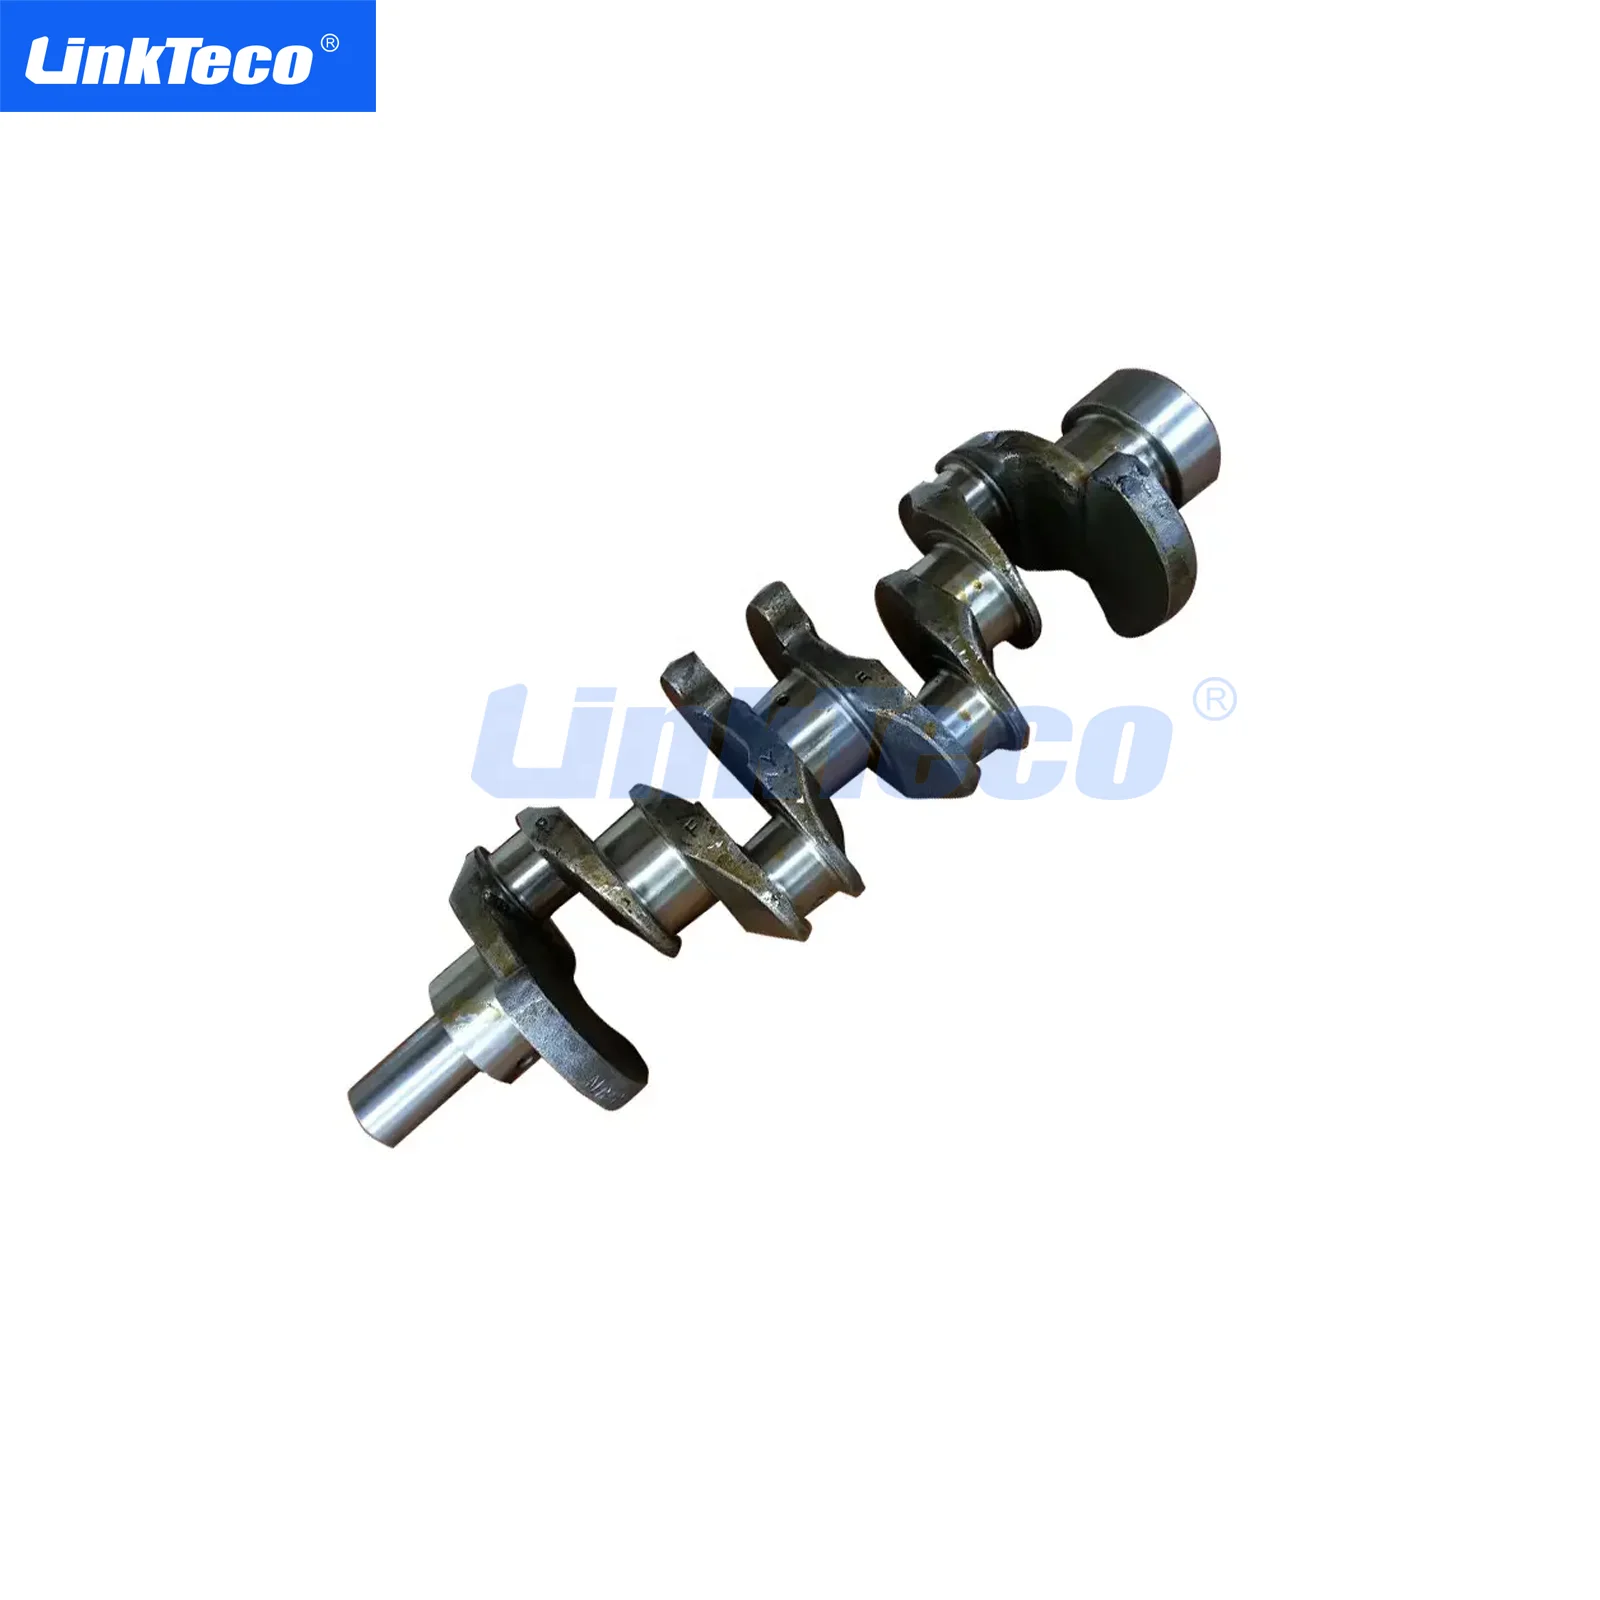 Engine Crankshaft for Nissan K24 K25 12201-Fy500 91H20-00990 91H20-10990 CRS-0752